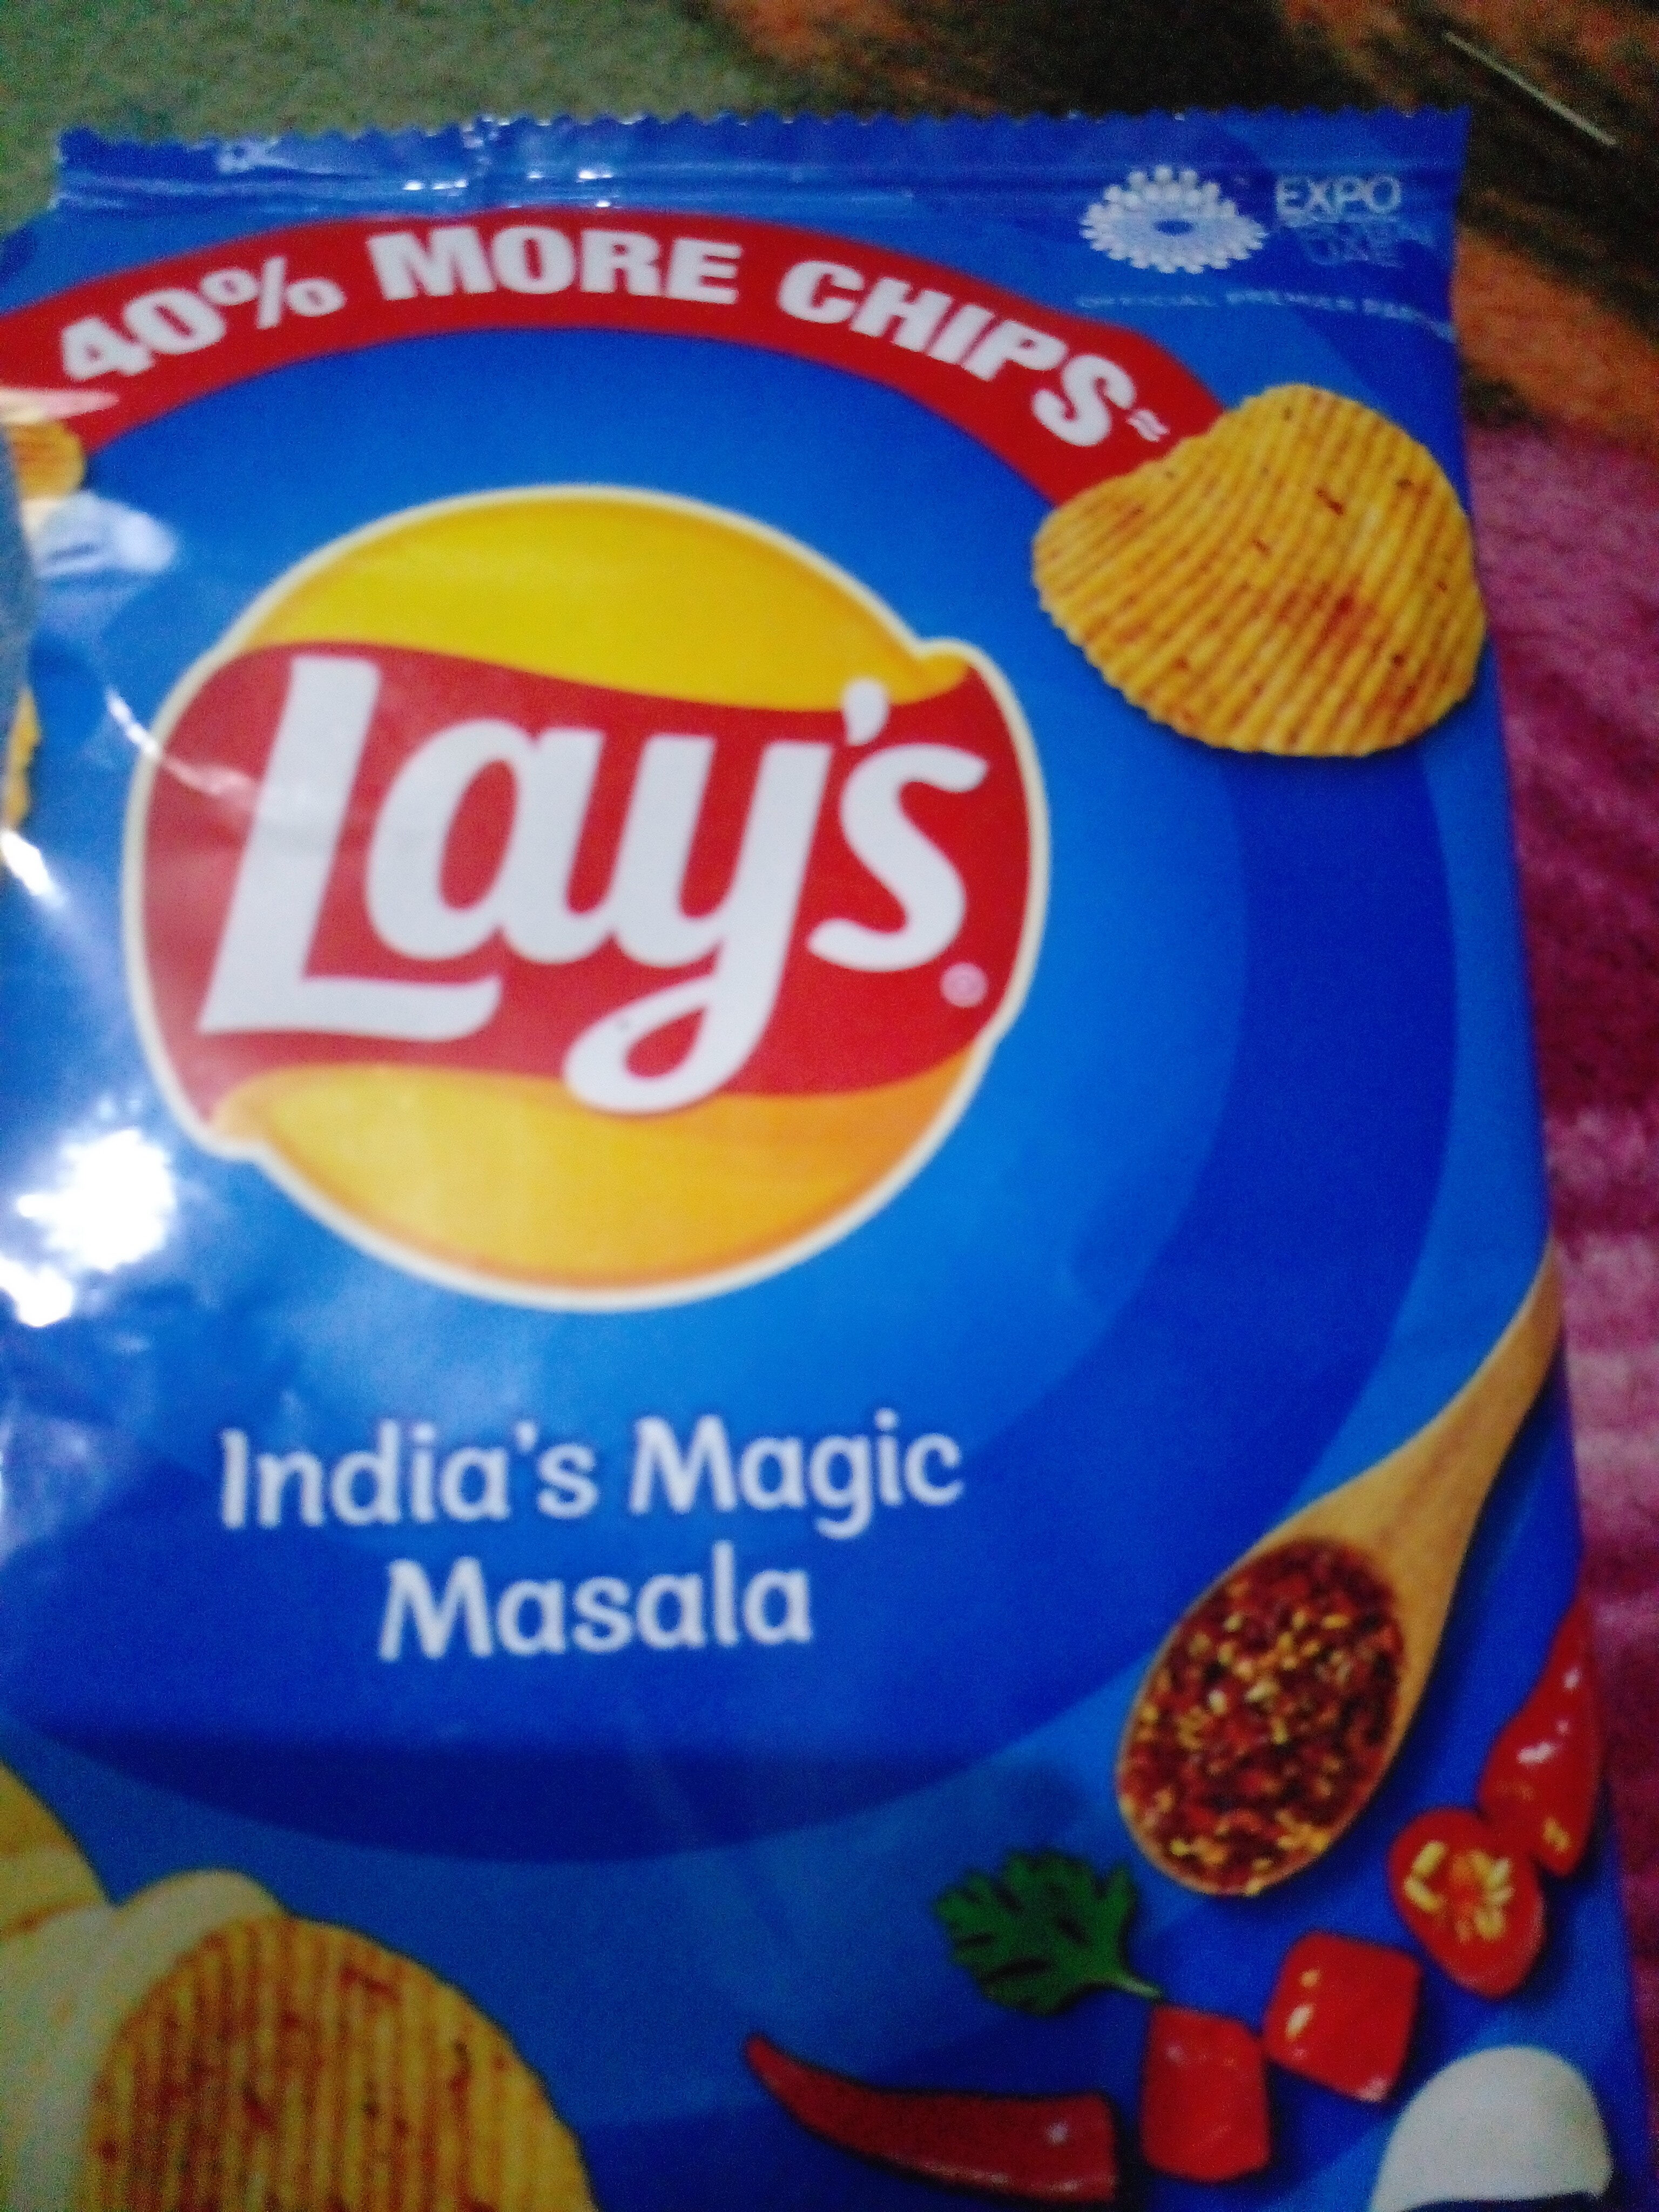 India's magic masala - Product